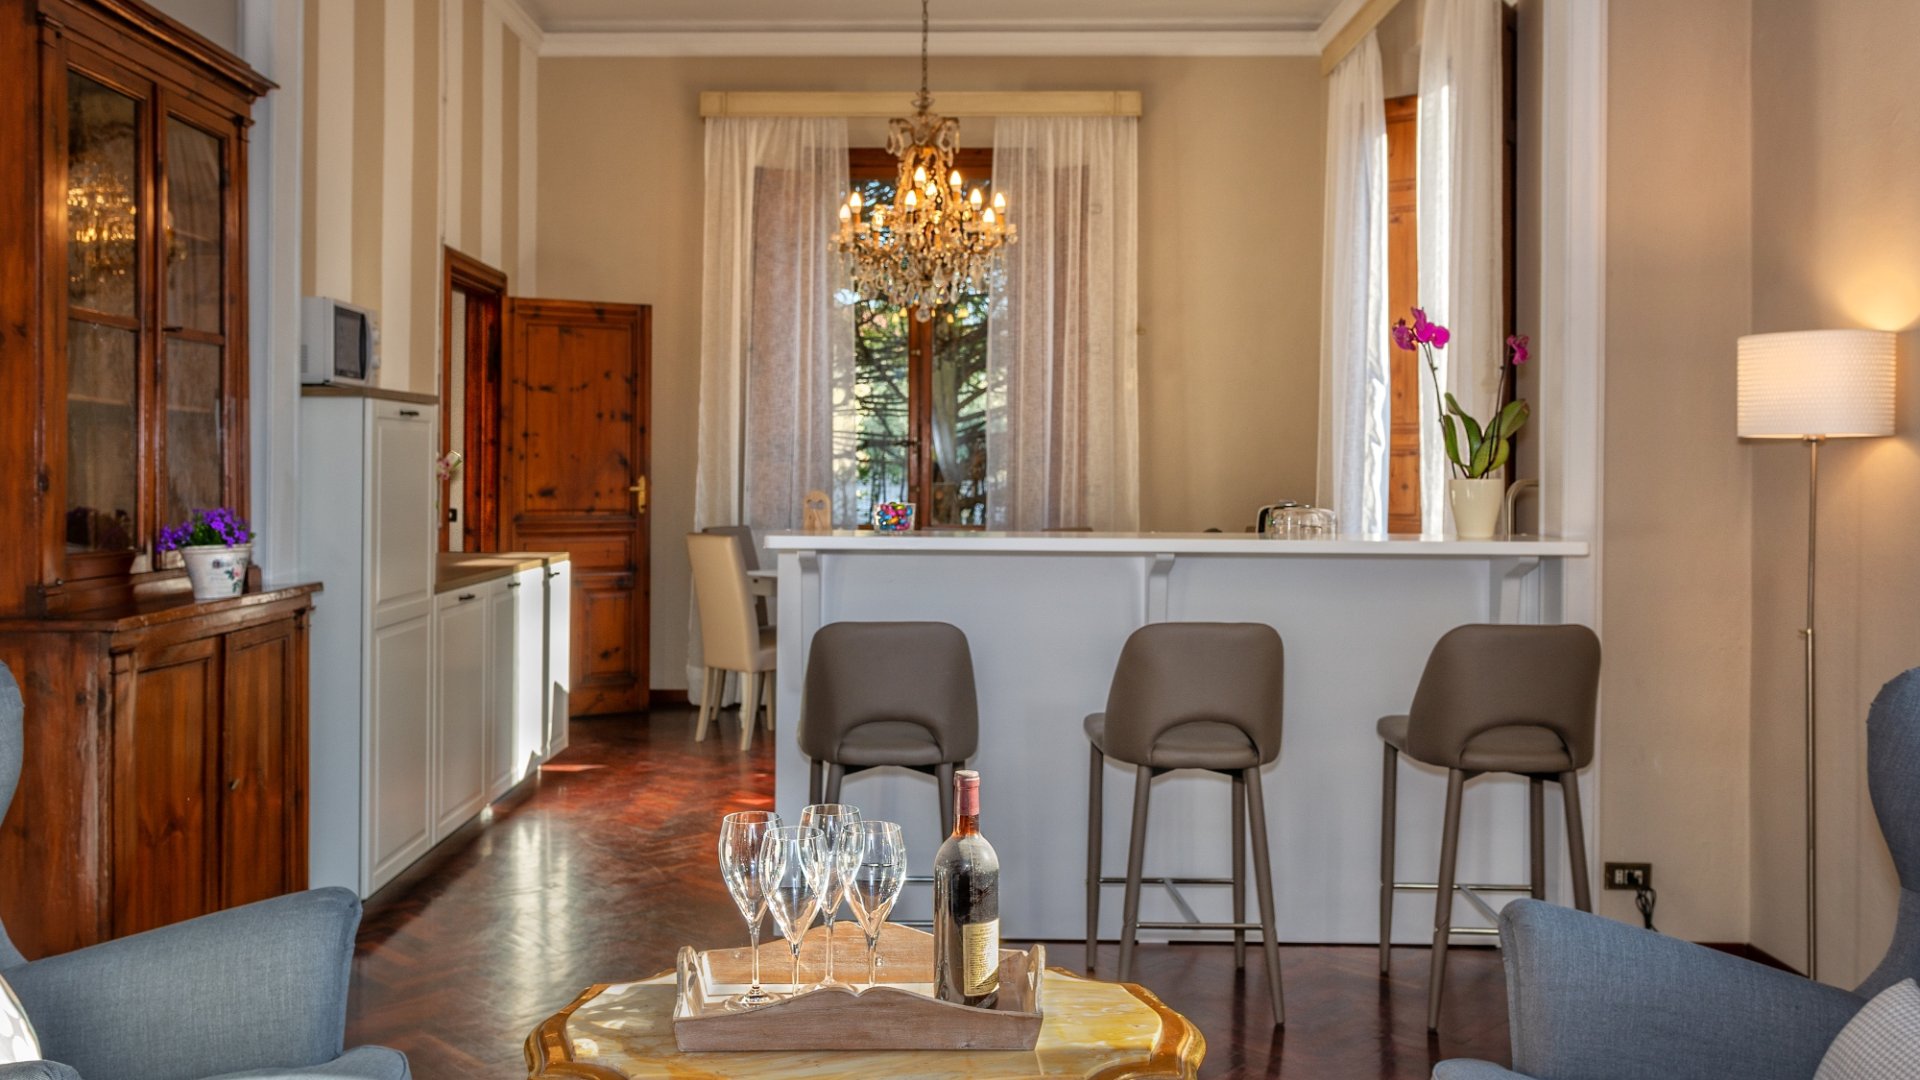 Sette notti a Villa Ricci Suites di Lucca, location ideale per la visita delle bellezze della Toscana